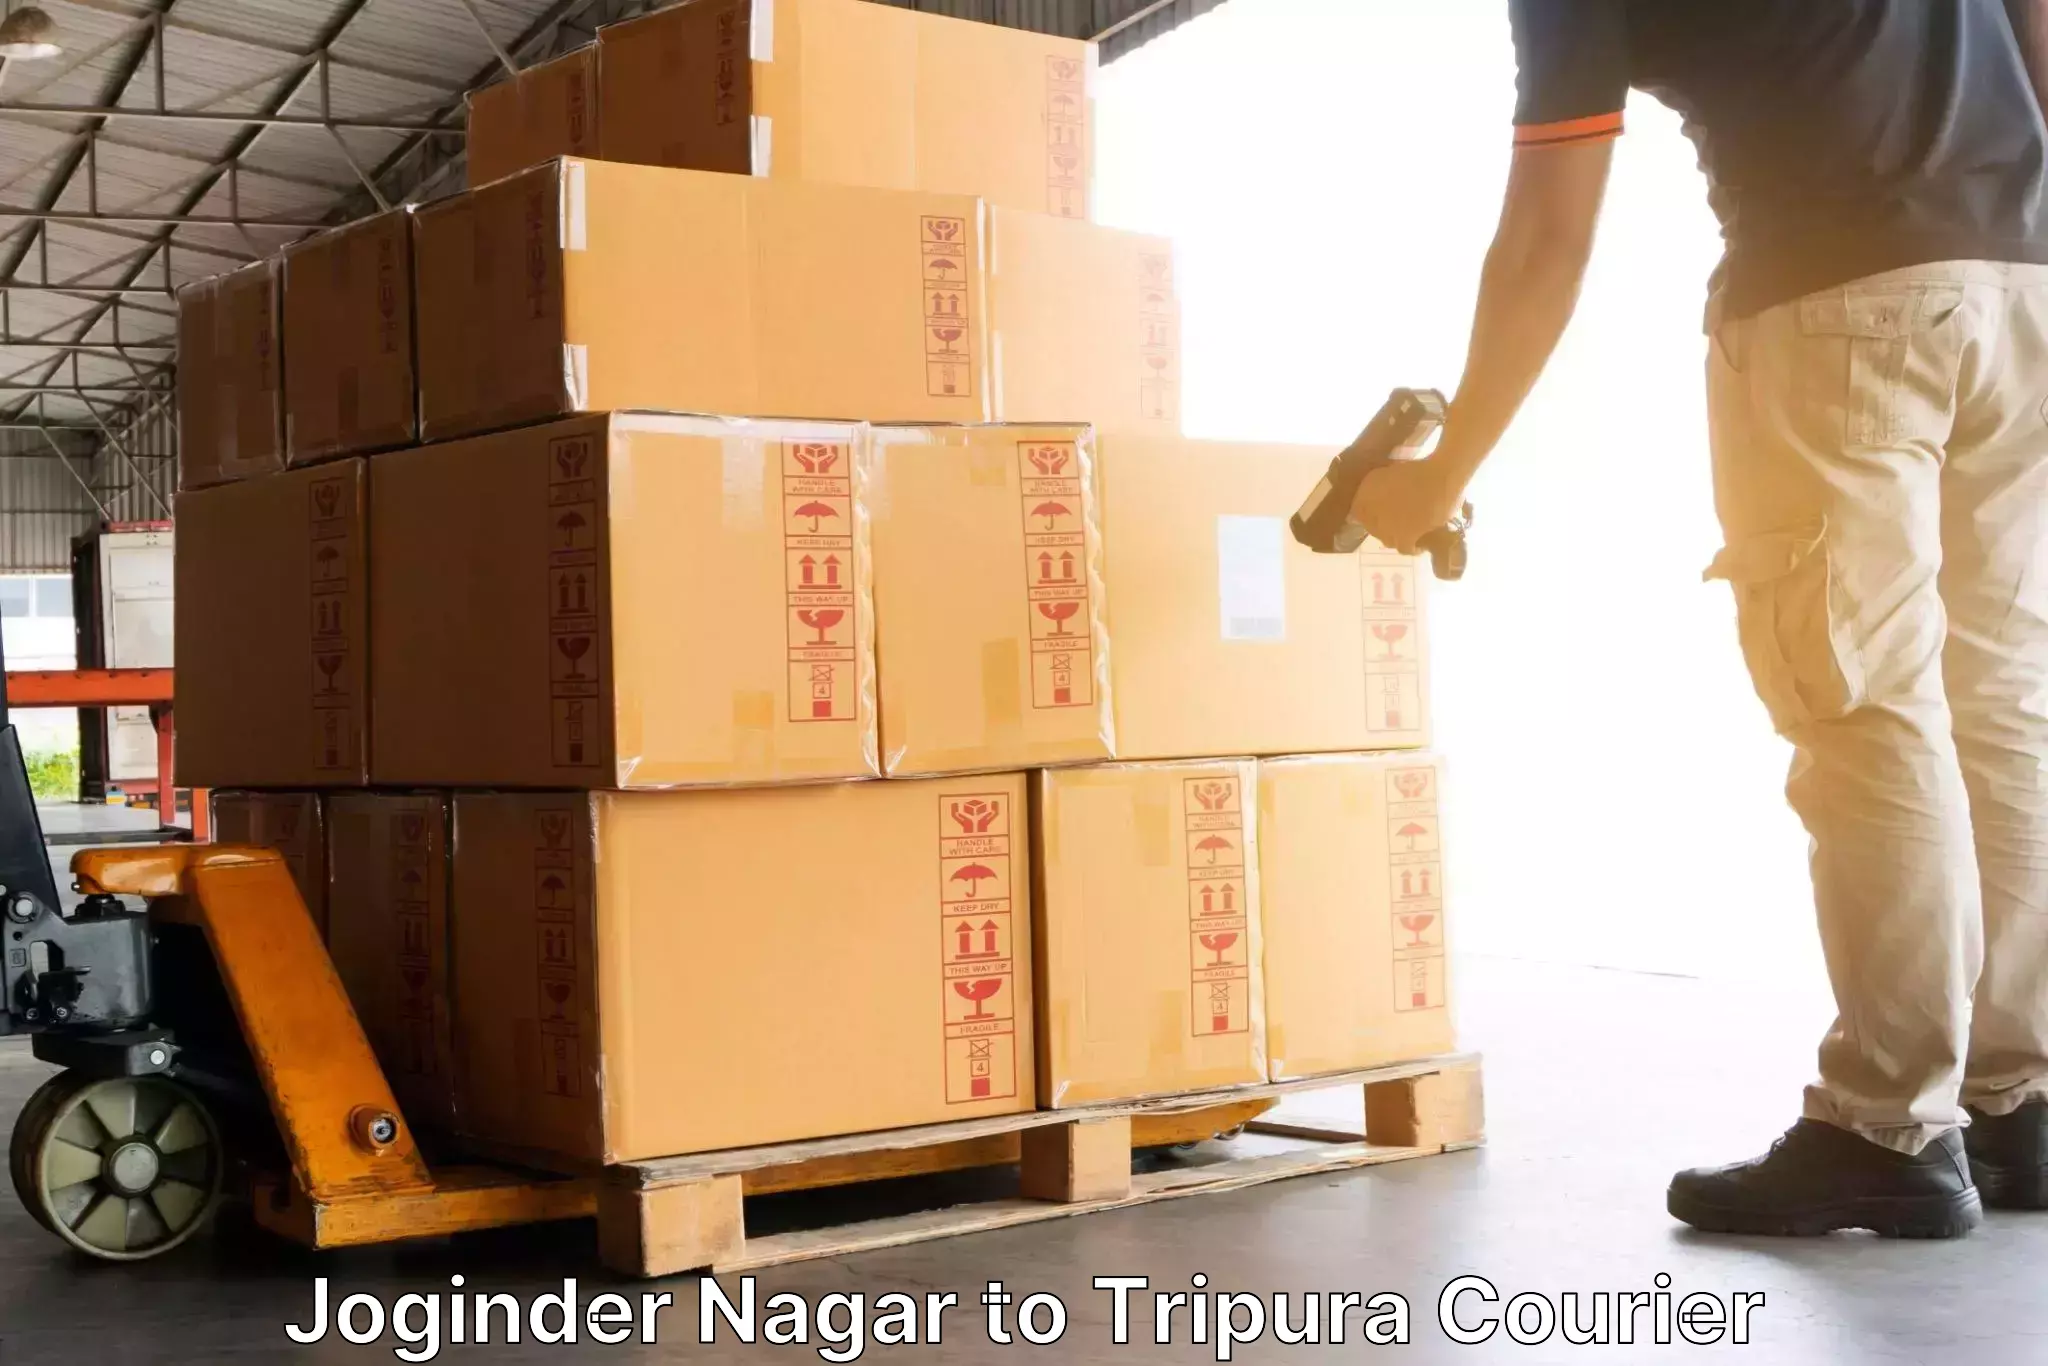 Global shipping solutions in Joginder Nagar to Radhakishorepur